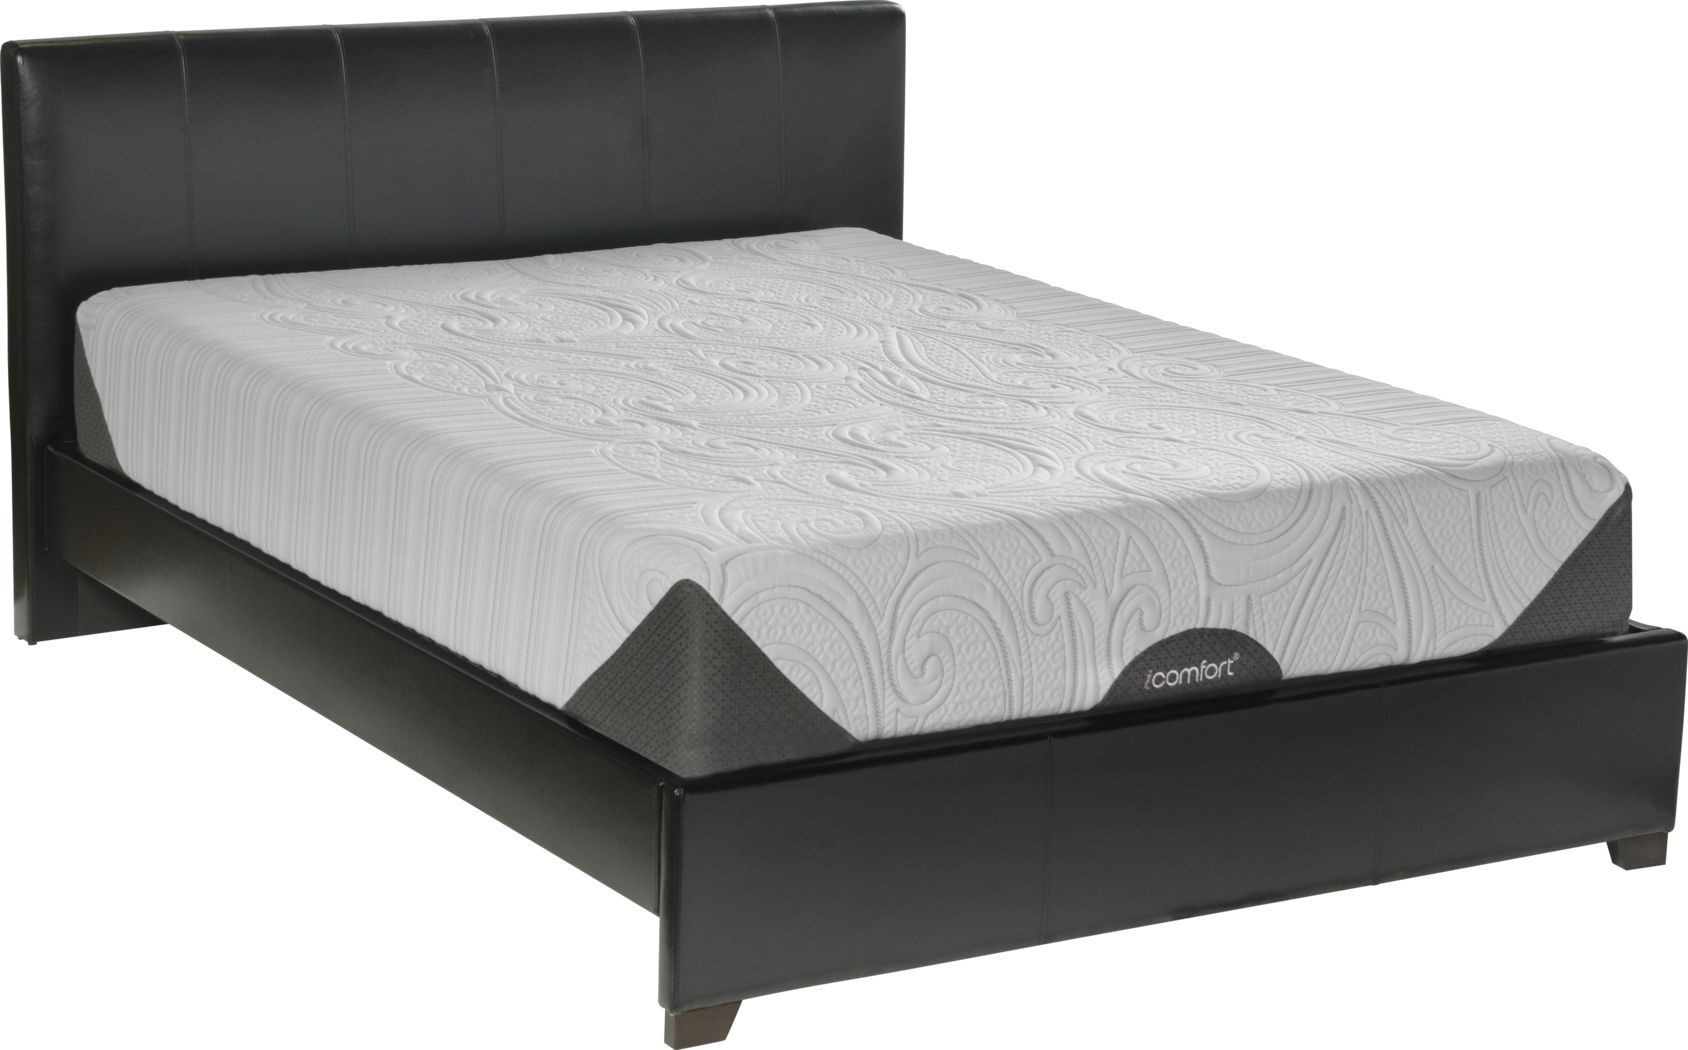 serta icomfort genius mattress